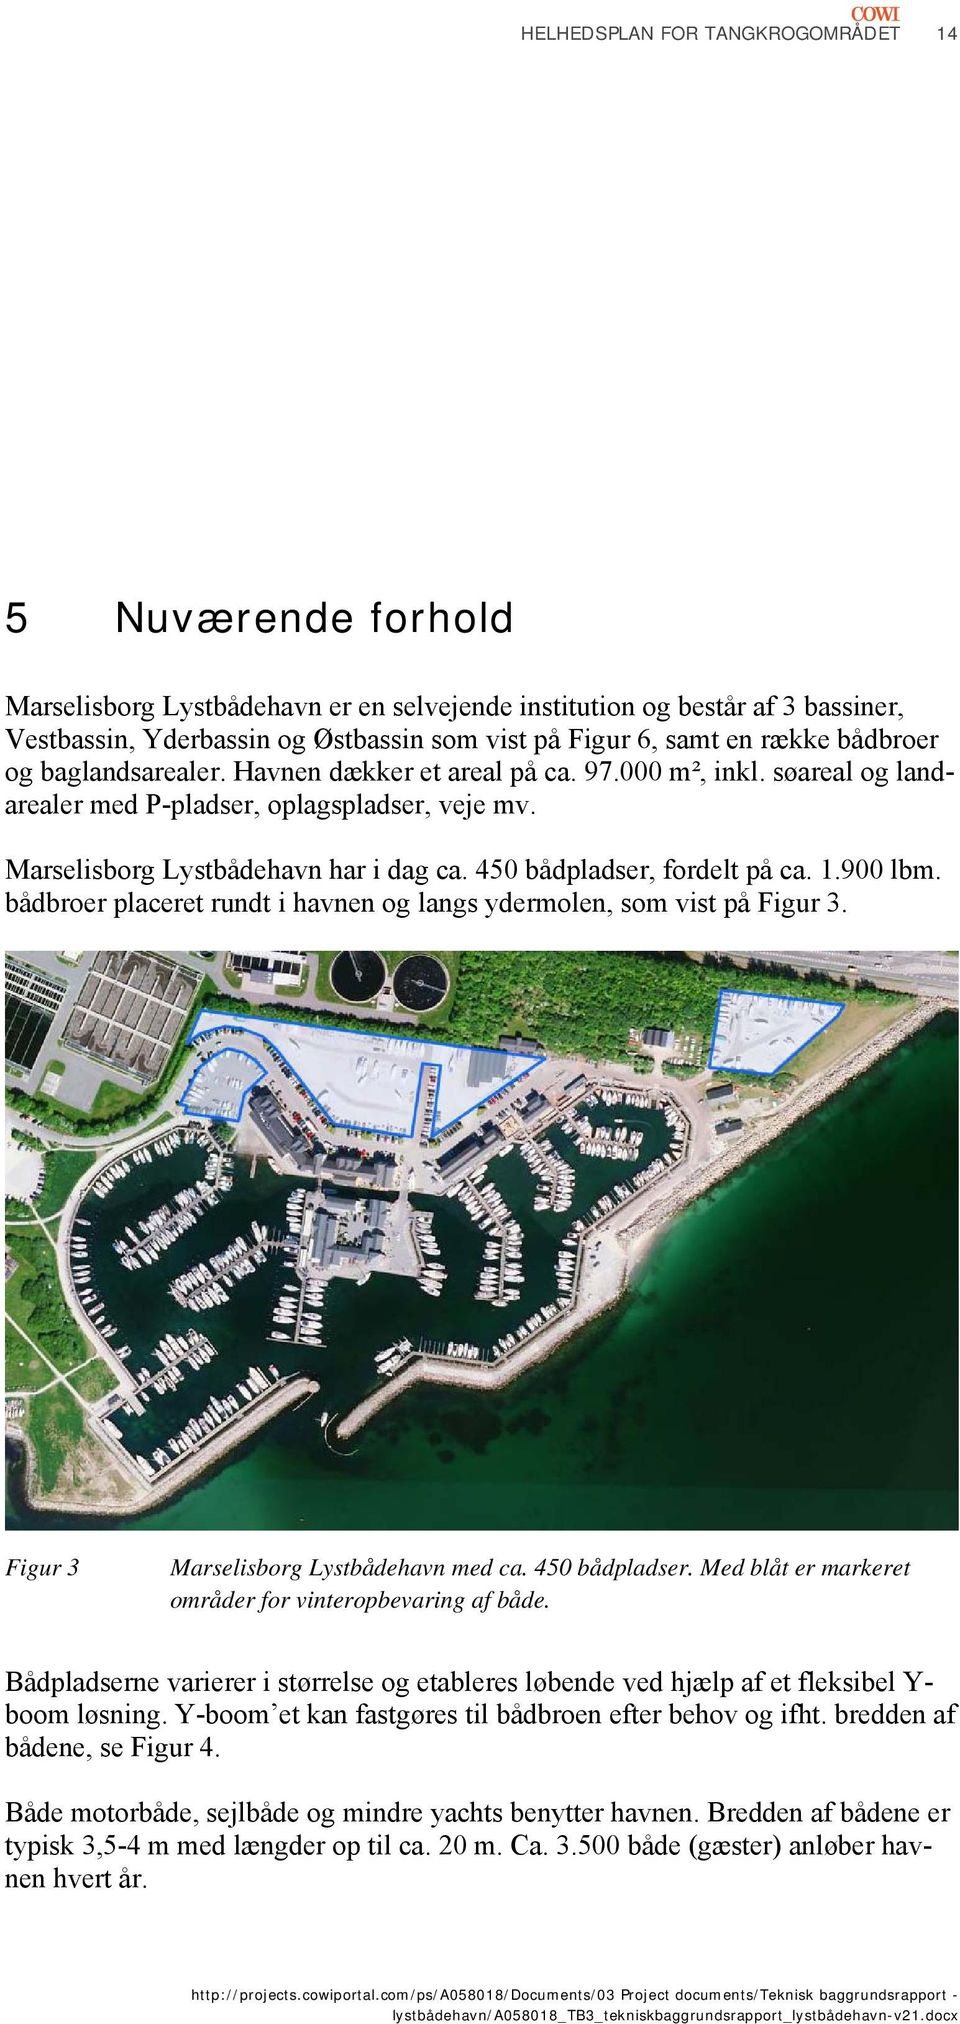 900 lbm. bådbroer placeret rundt i havnen og langs ydermolen, som vist på Figur 3. Figur 3 Marselisborg Lystbådehavn med ca. 450 bådpladser. Med blåt er markeret områder for vinteropbevaring af både.